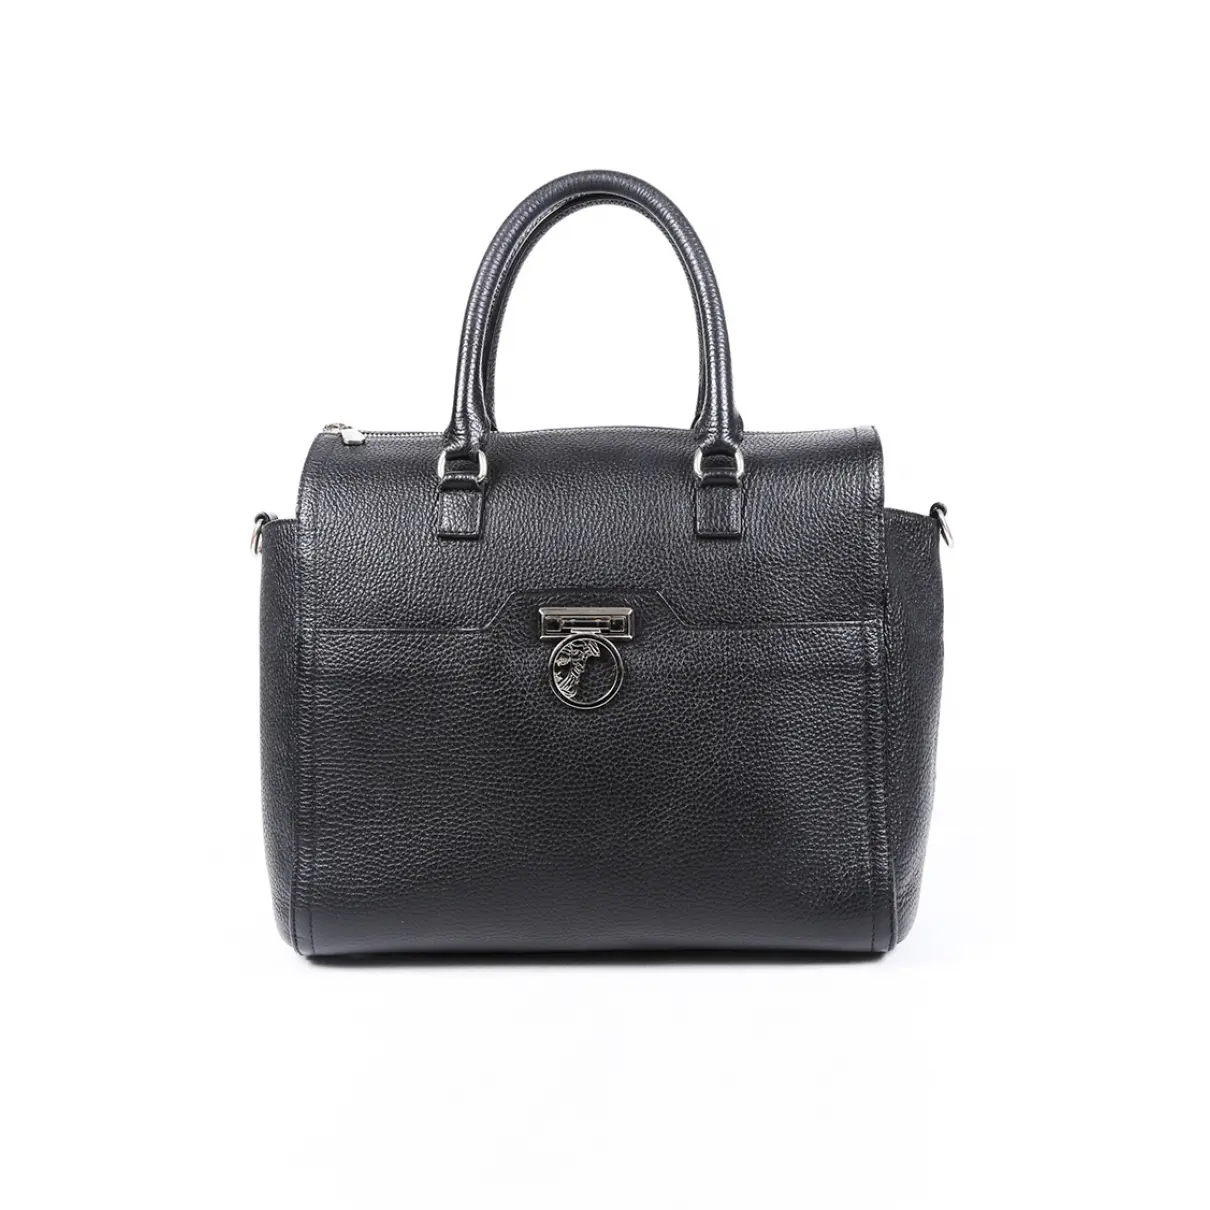 Buy Versace Leather shoulder bag online